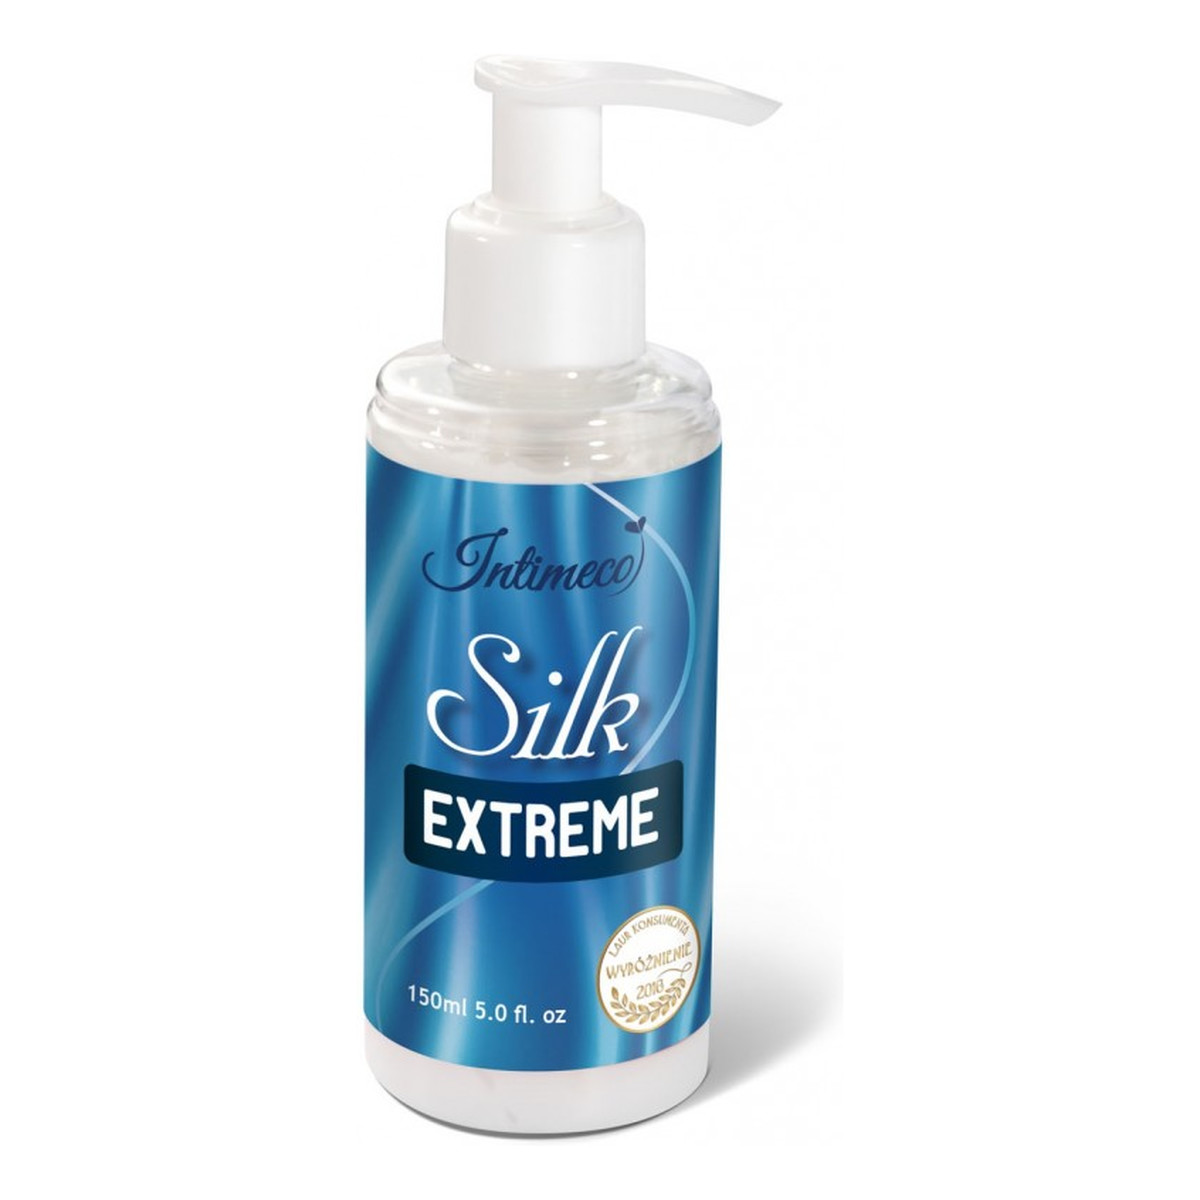 Intimeco Silk Extreme Gel nawilżający Żel intymny 150ml